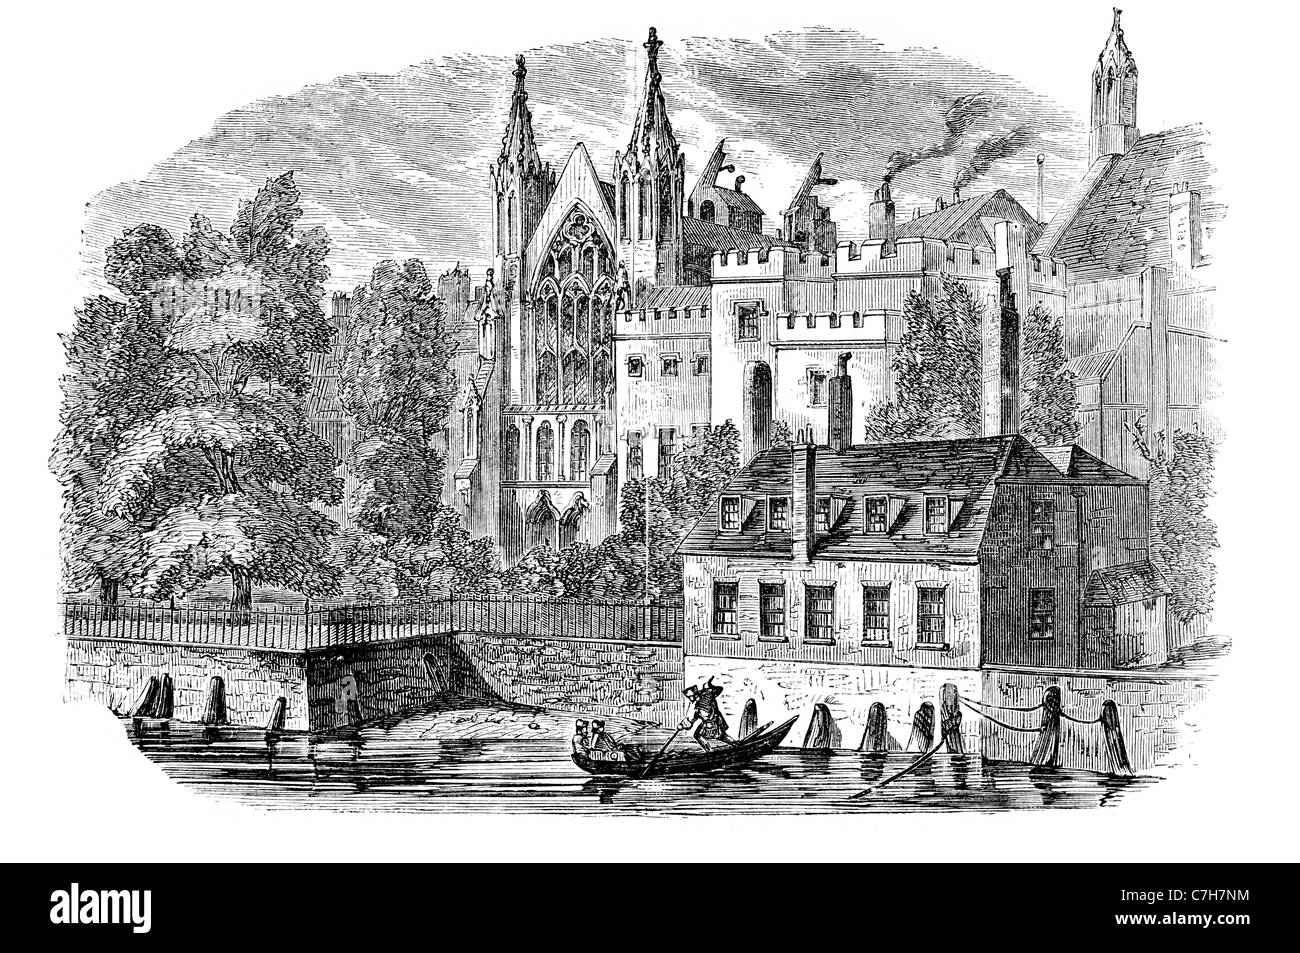 Fluss vorderen alten House Of Lords Lords Spiritual und zeitliches Handlungen Parlament Peers zeremonielle Zwecke oberen Haus des Parlaments Stockfoto